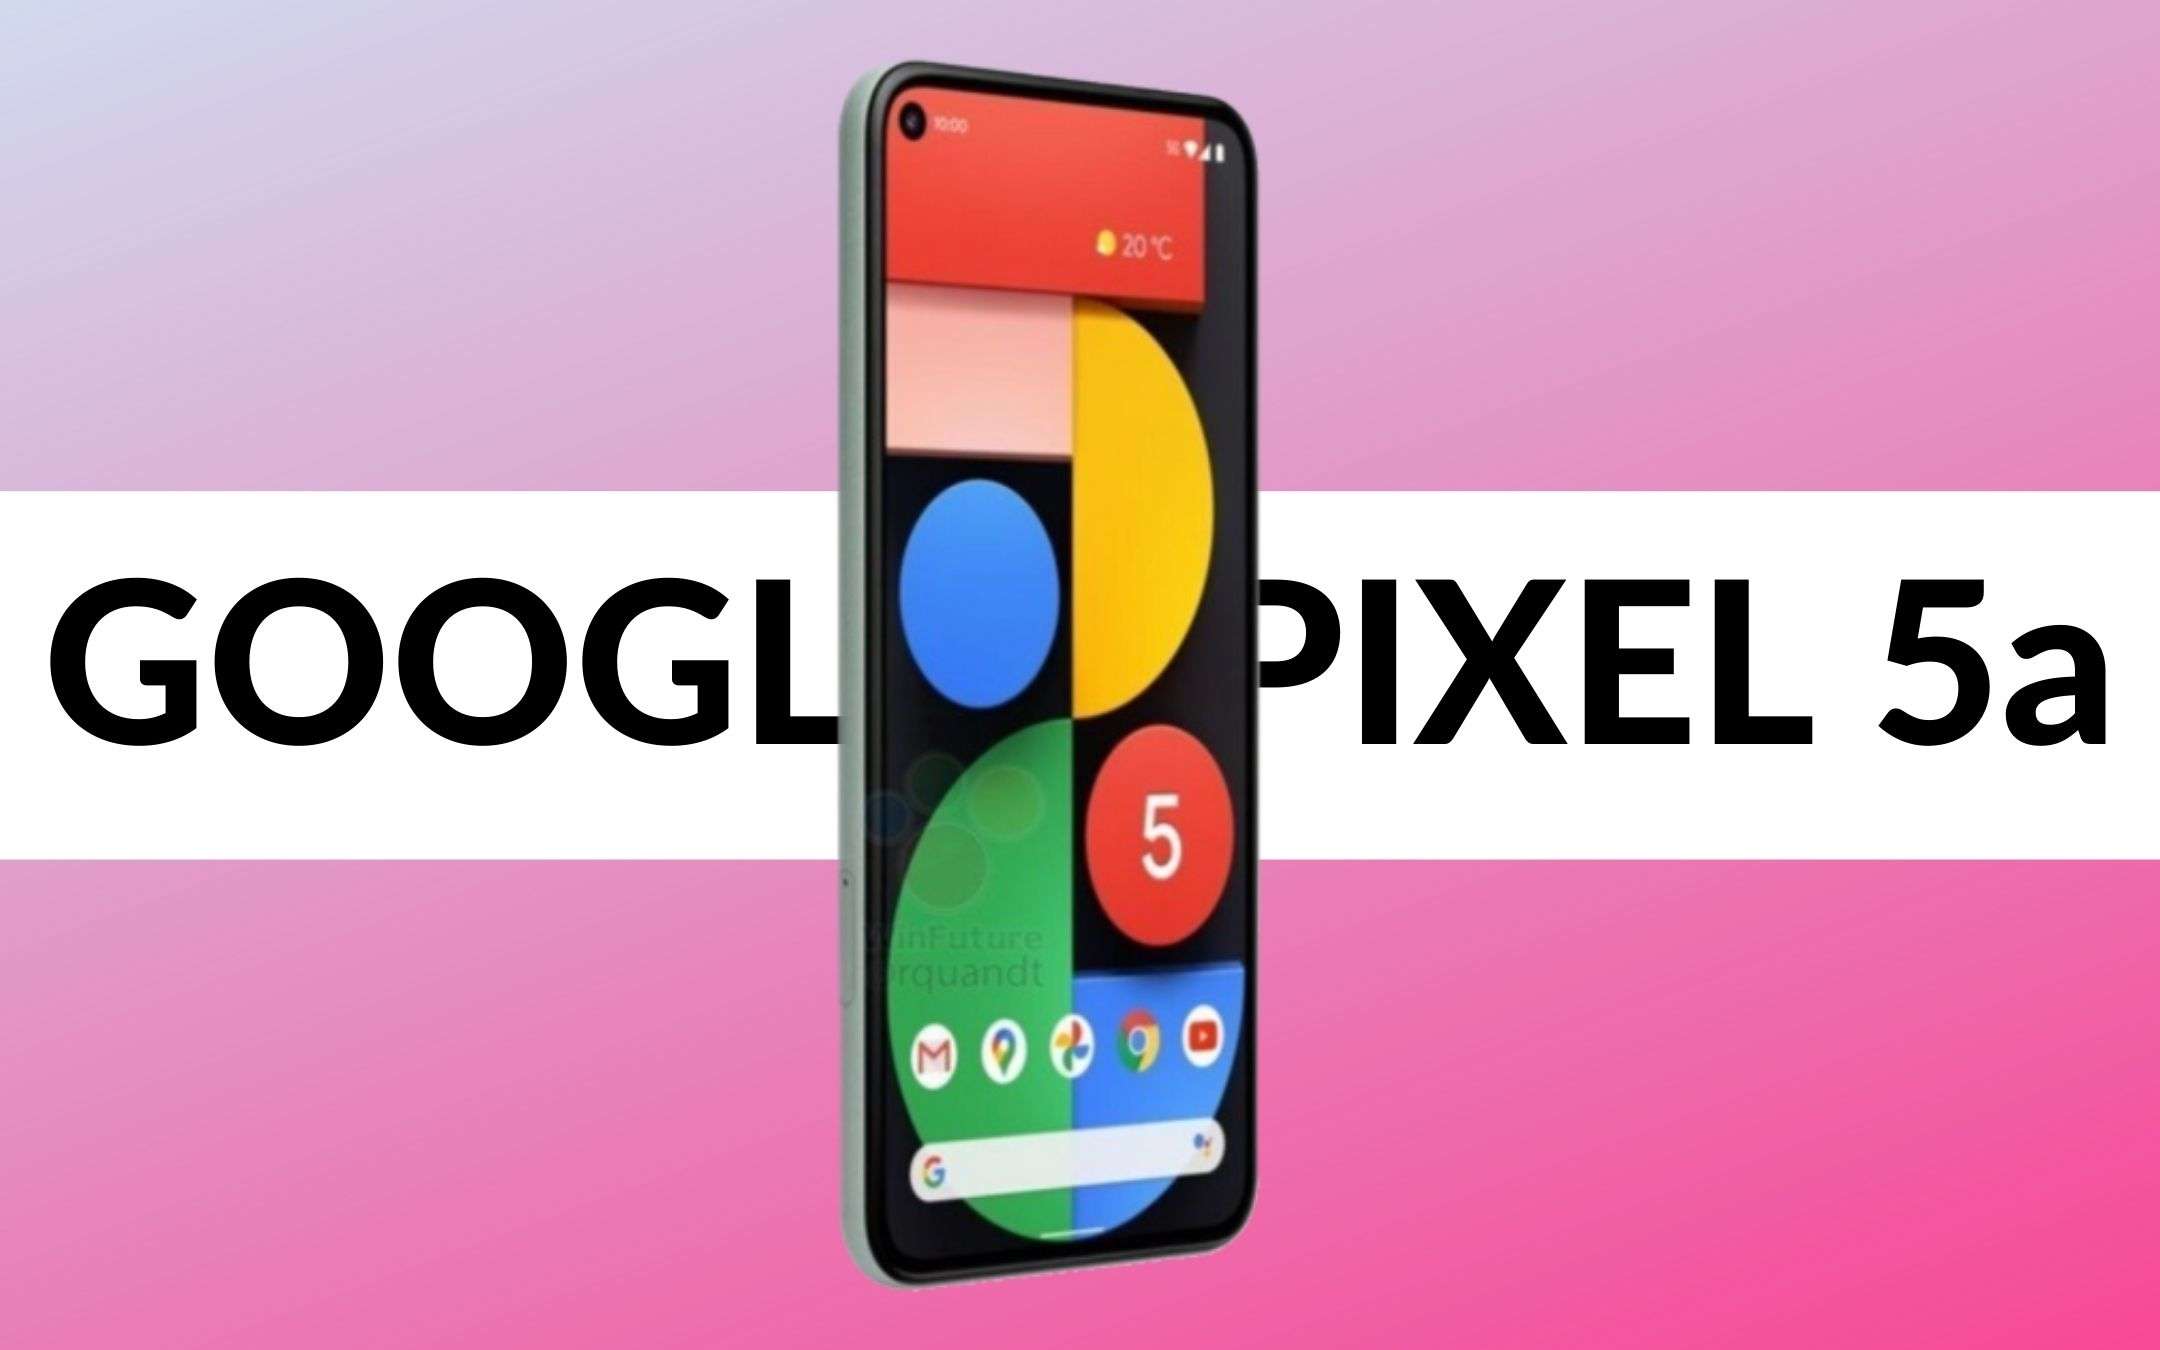 Avvistato un nuovo device Google: sarà il Pixel 5a?